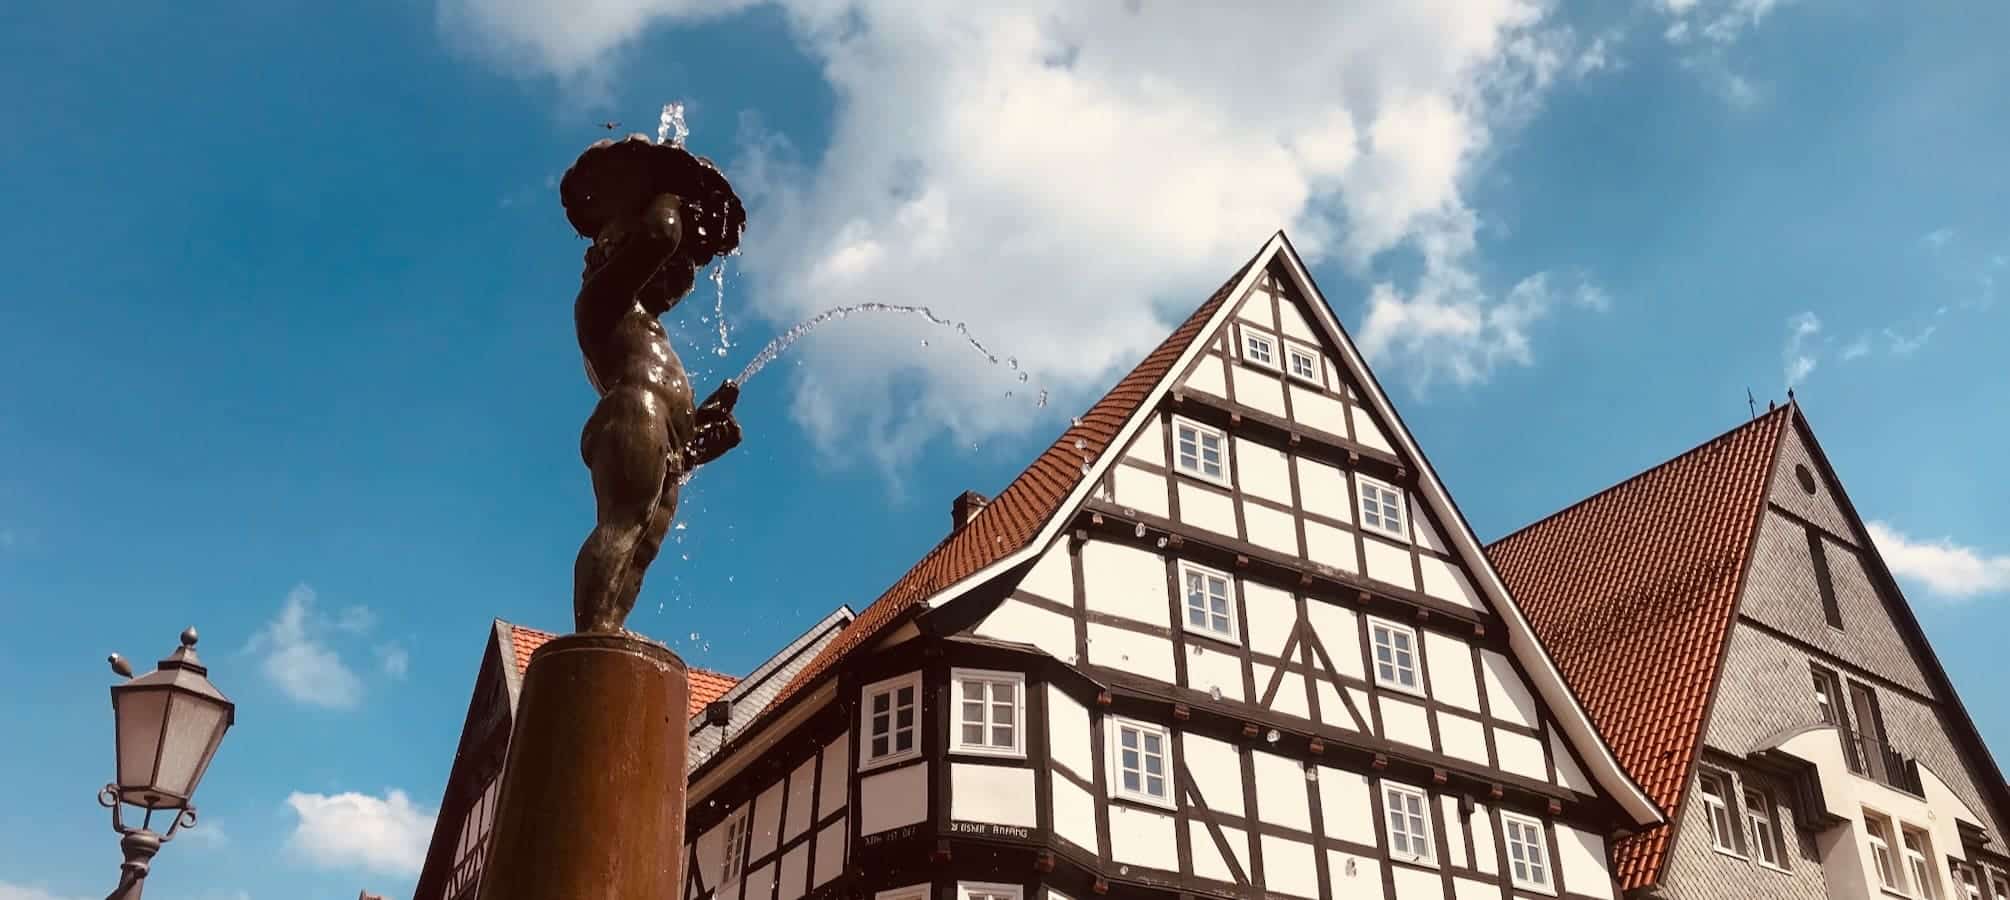 Figur Marktbrunnen mit Fachwerkhaus im Hintergrund Bad Wildungen